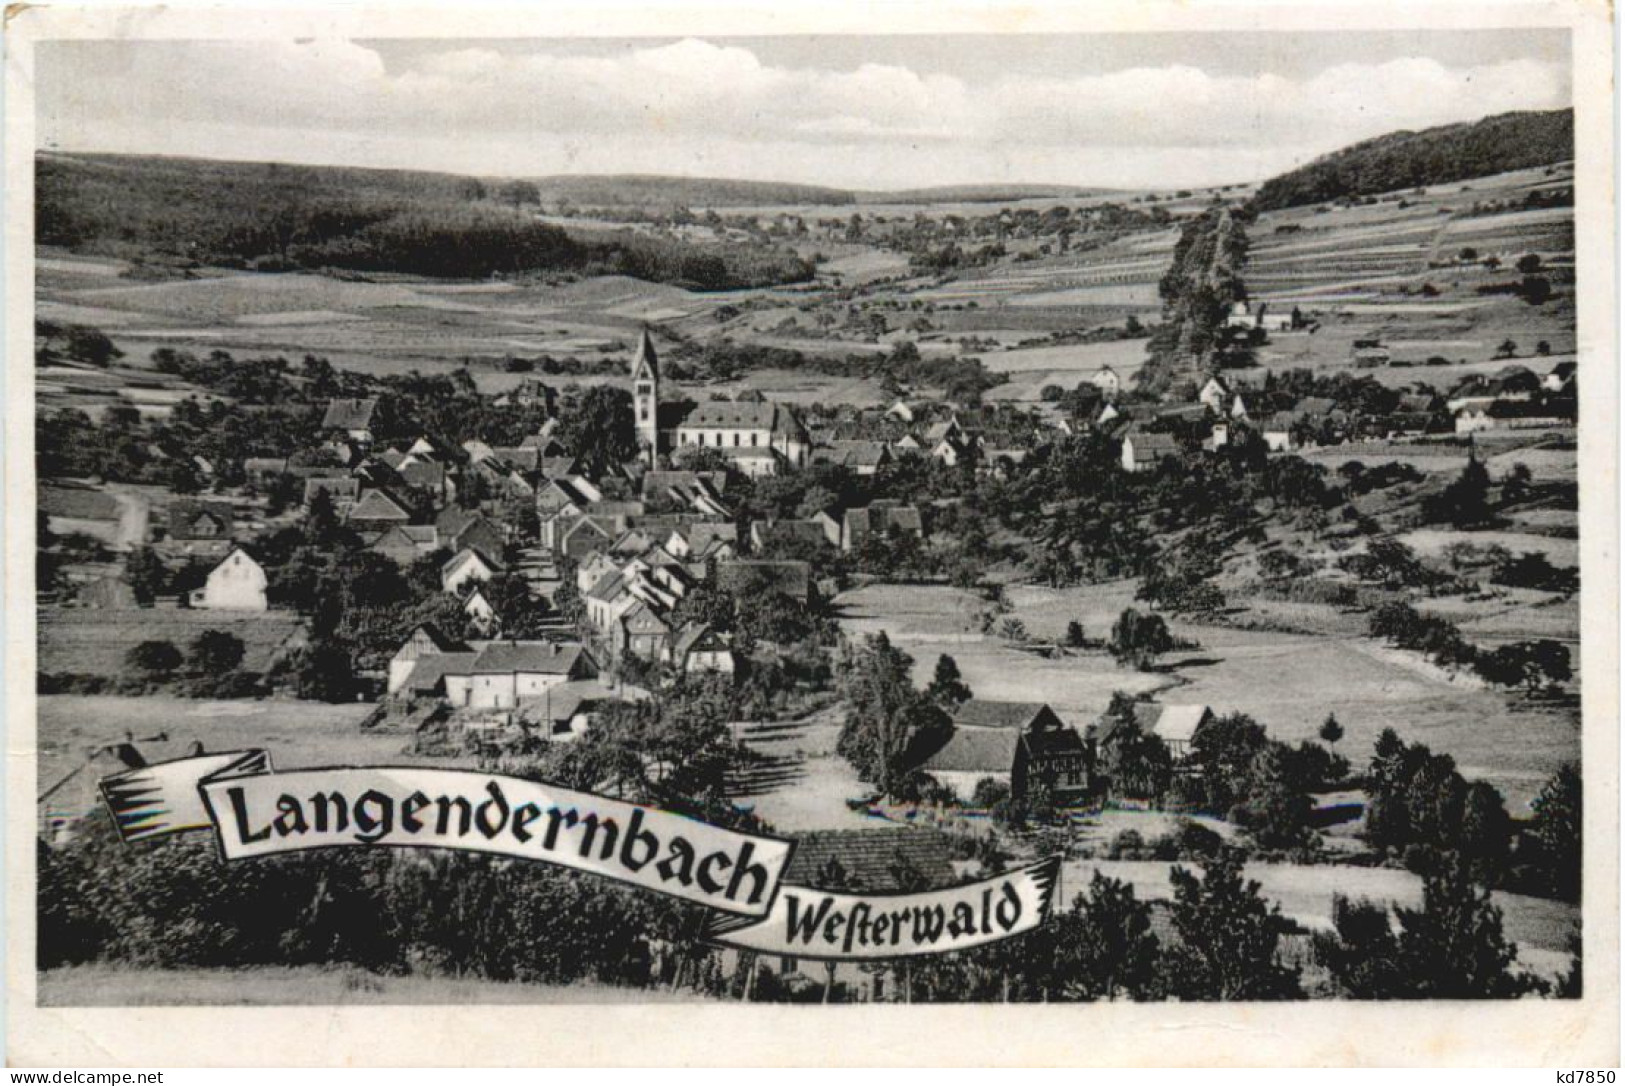 Langendernbach Westerwald - Limburg